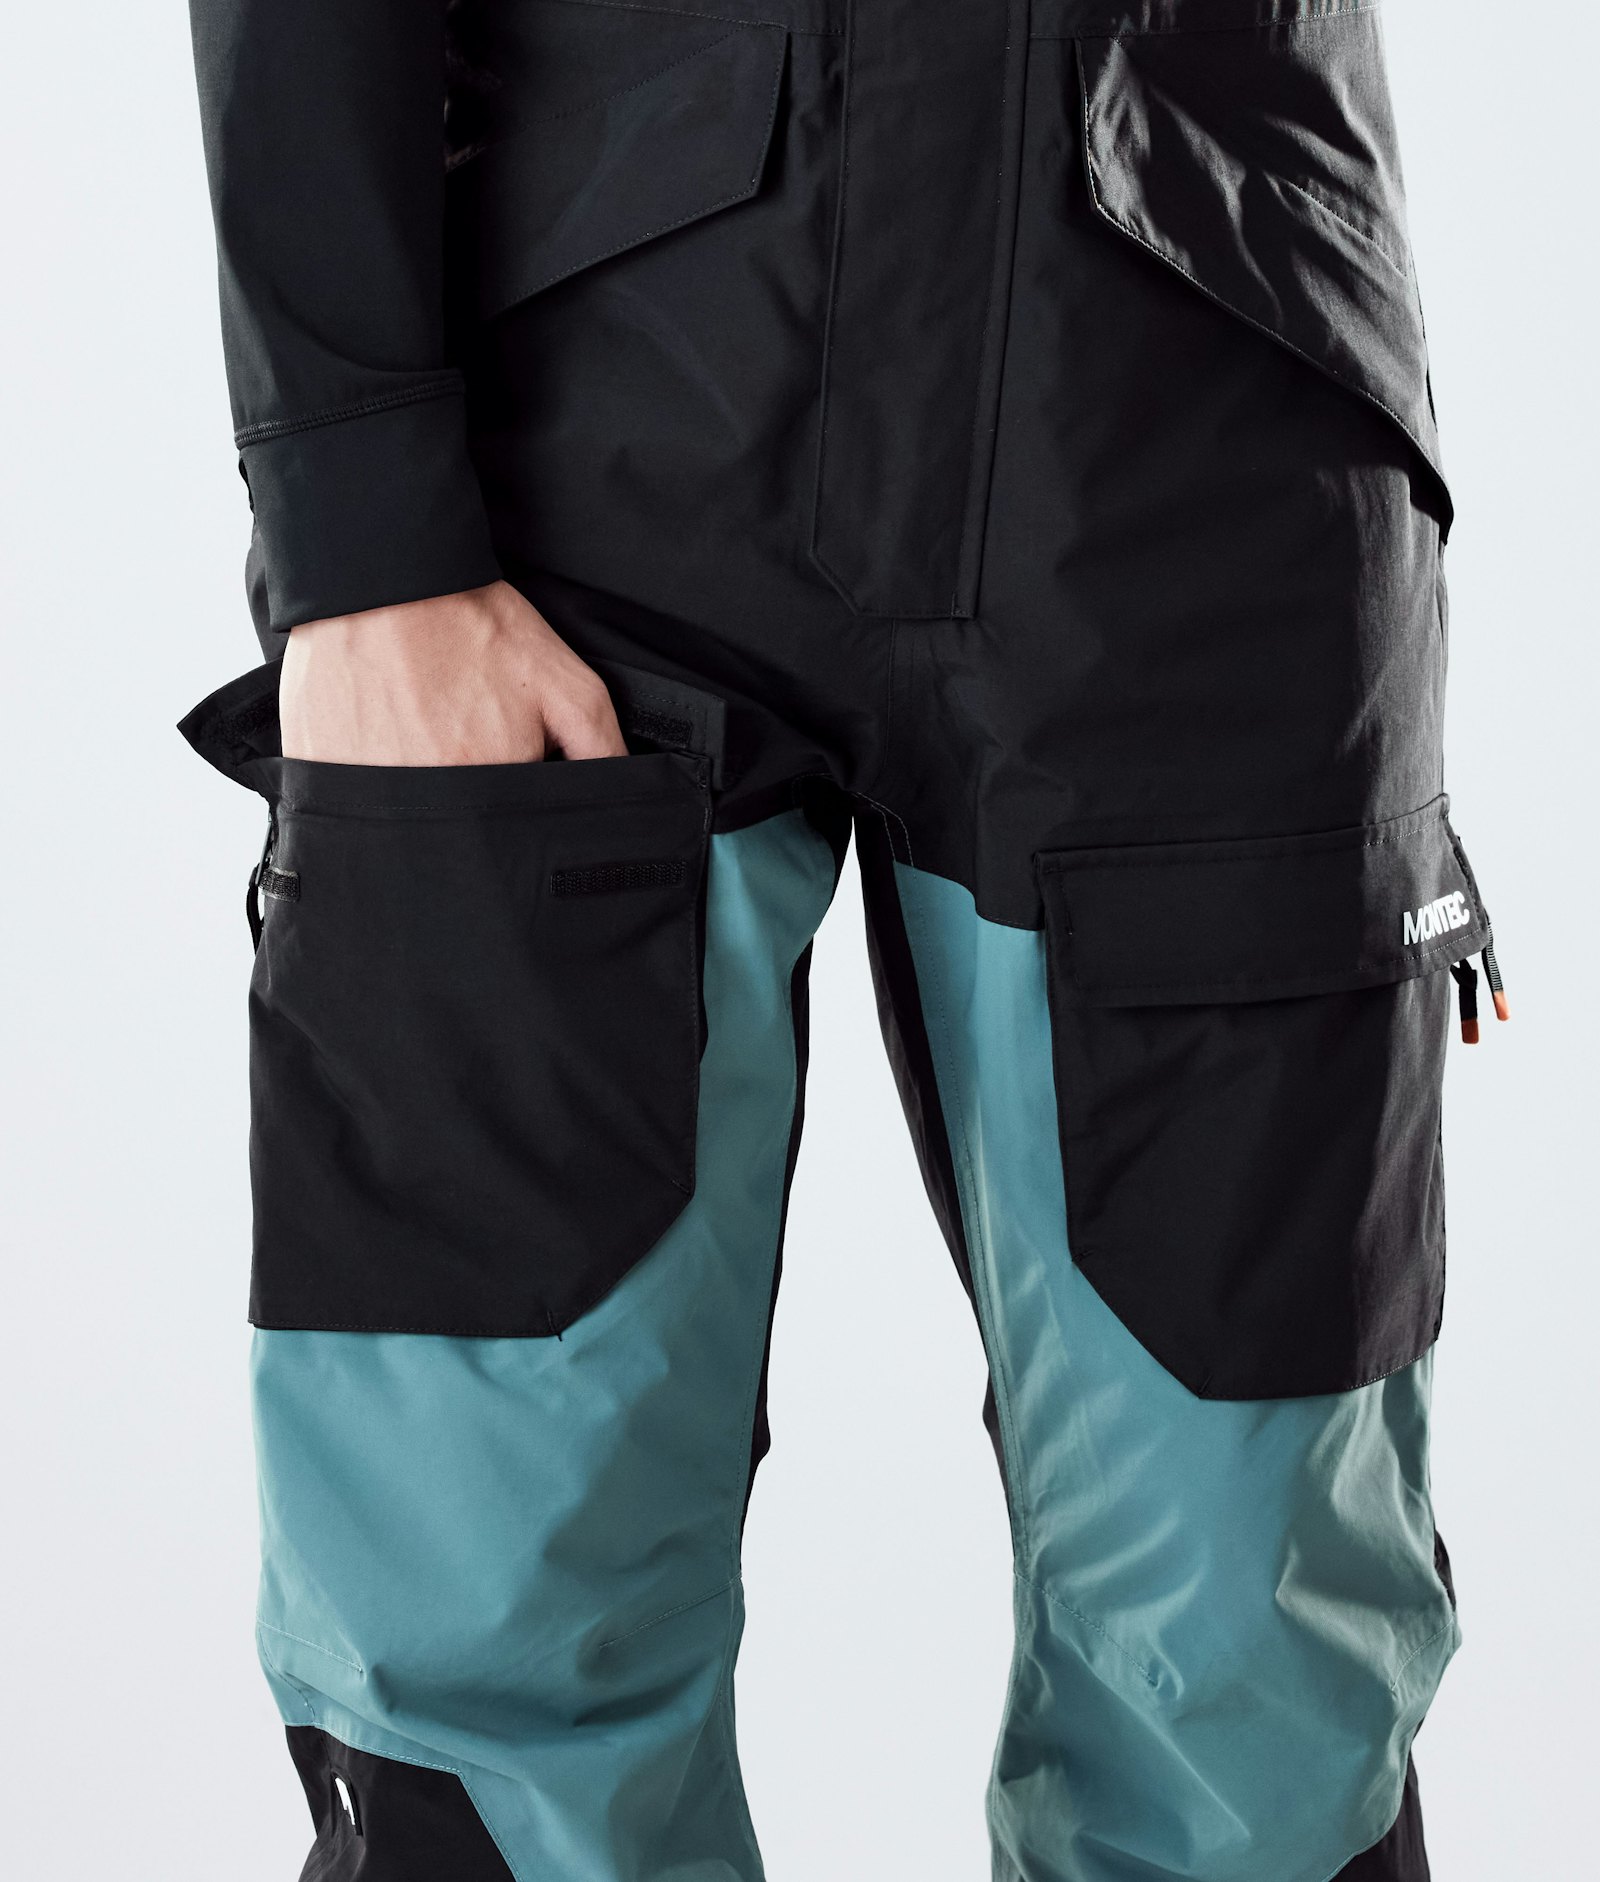 Montec Fawk 2020 Pantaloni Snowboard Uomo Black/Atlantic